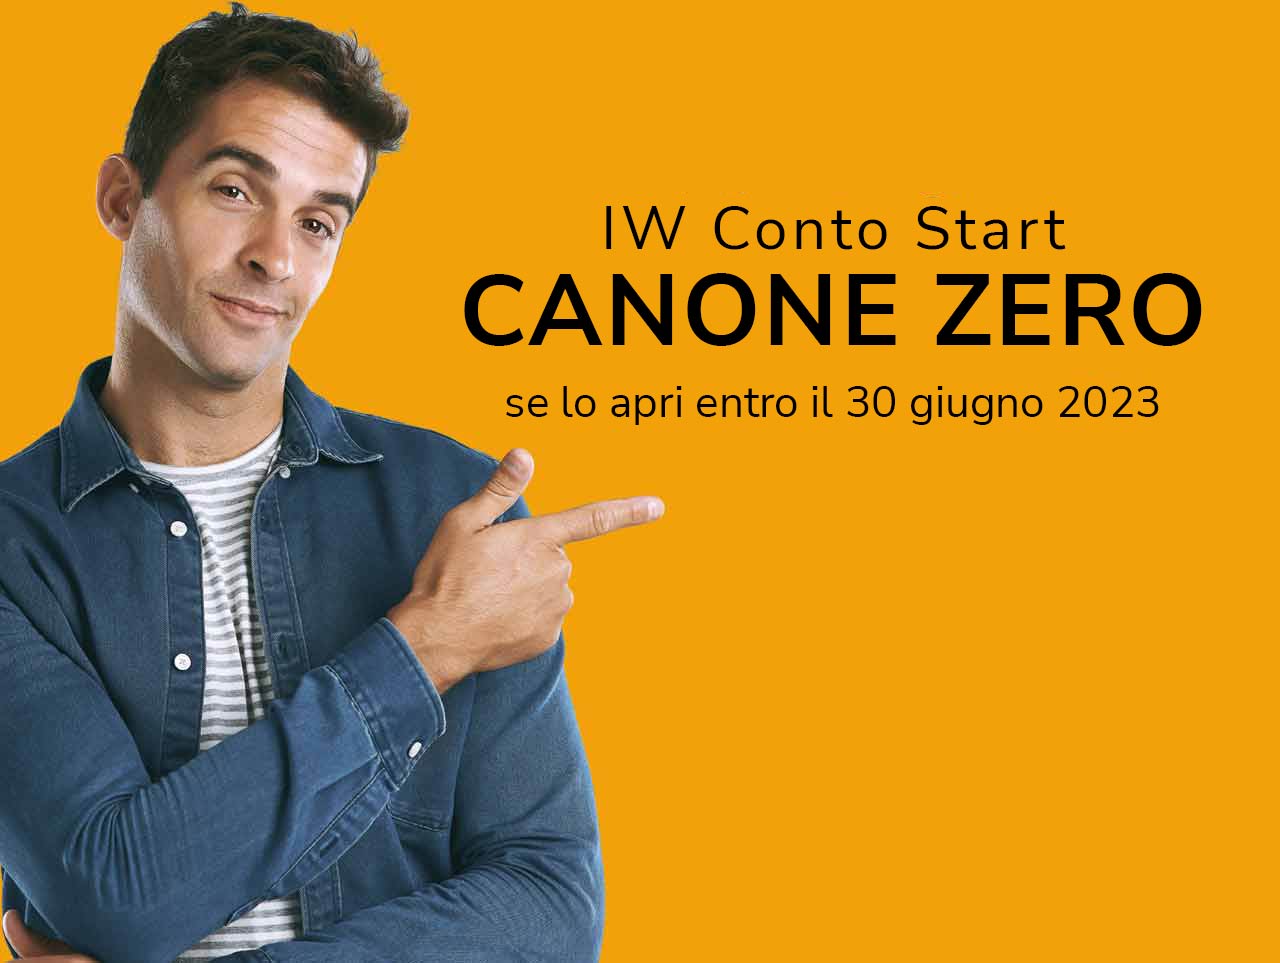 Giovane sorridente indica la scritta "IW Conto Start Canone Zero se lo apri entro il 30 giugno 2023"